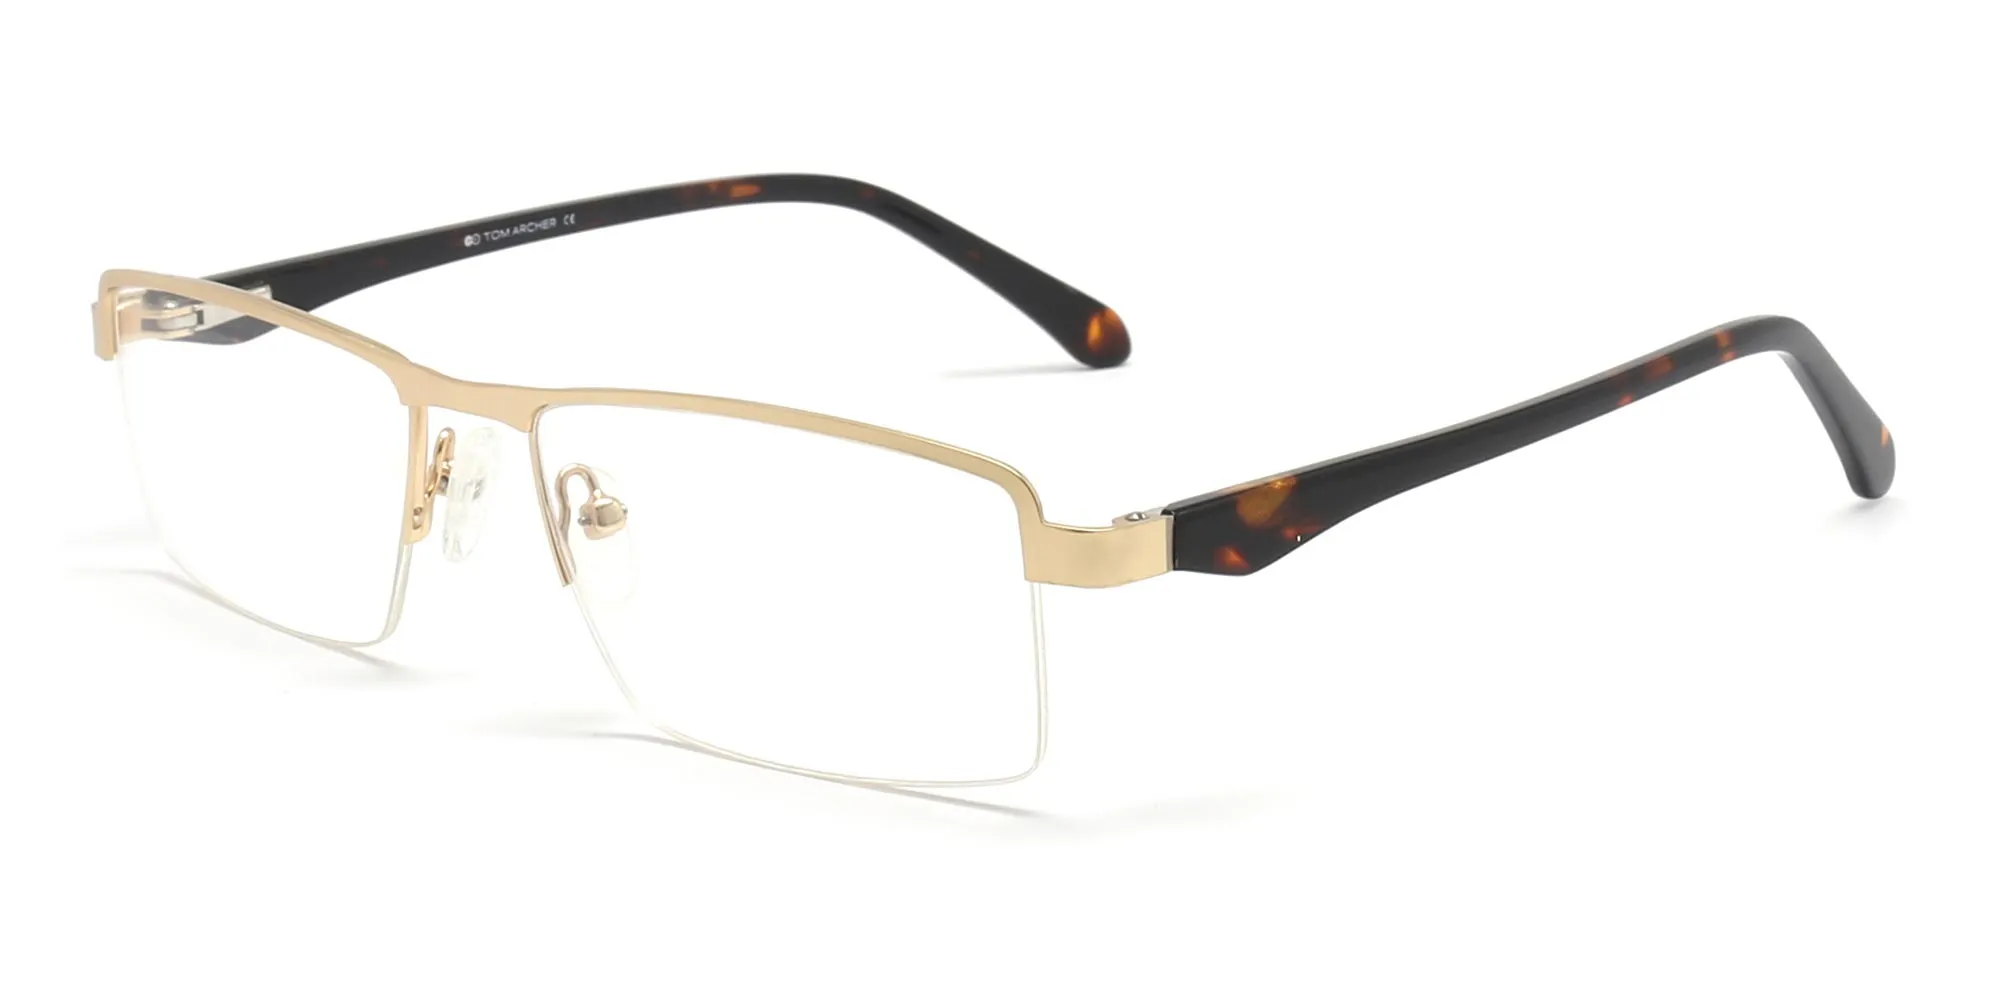 modern reading glasses in gold & tortoiseshell frame-2